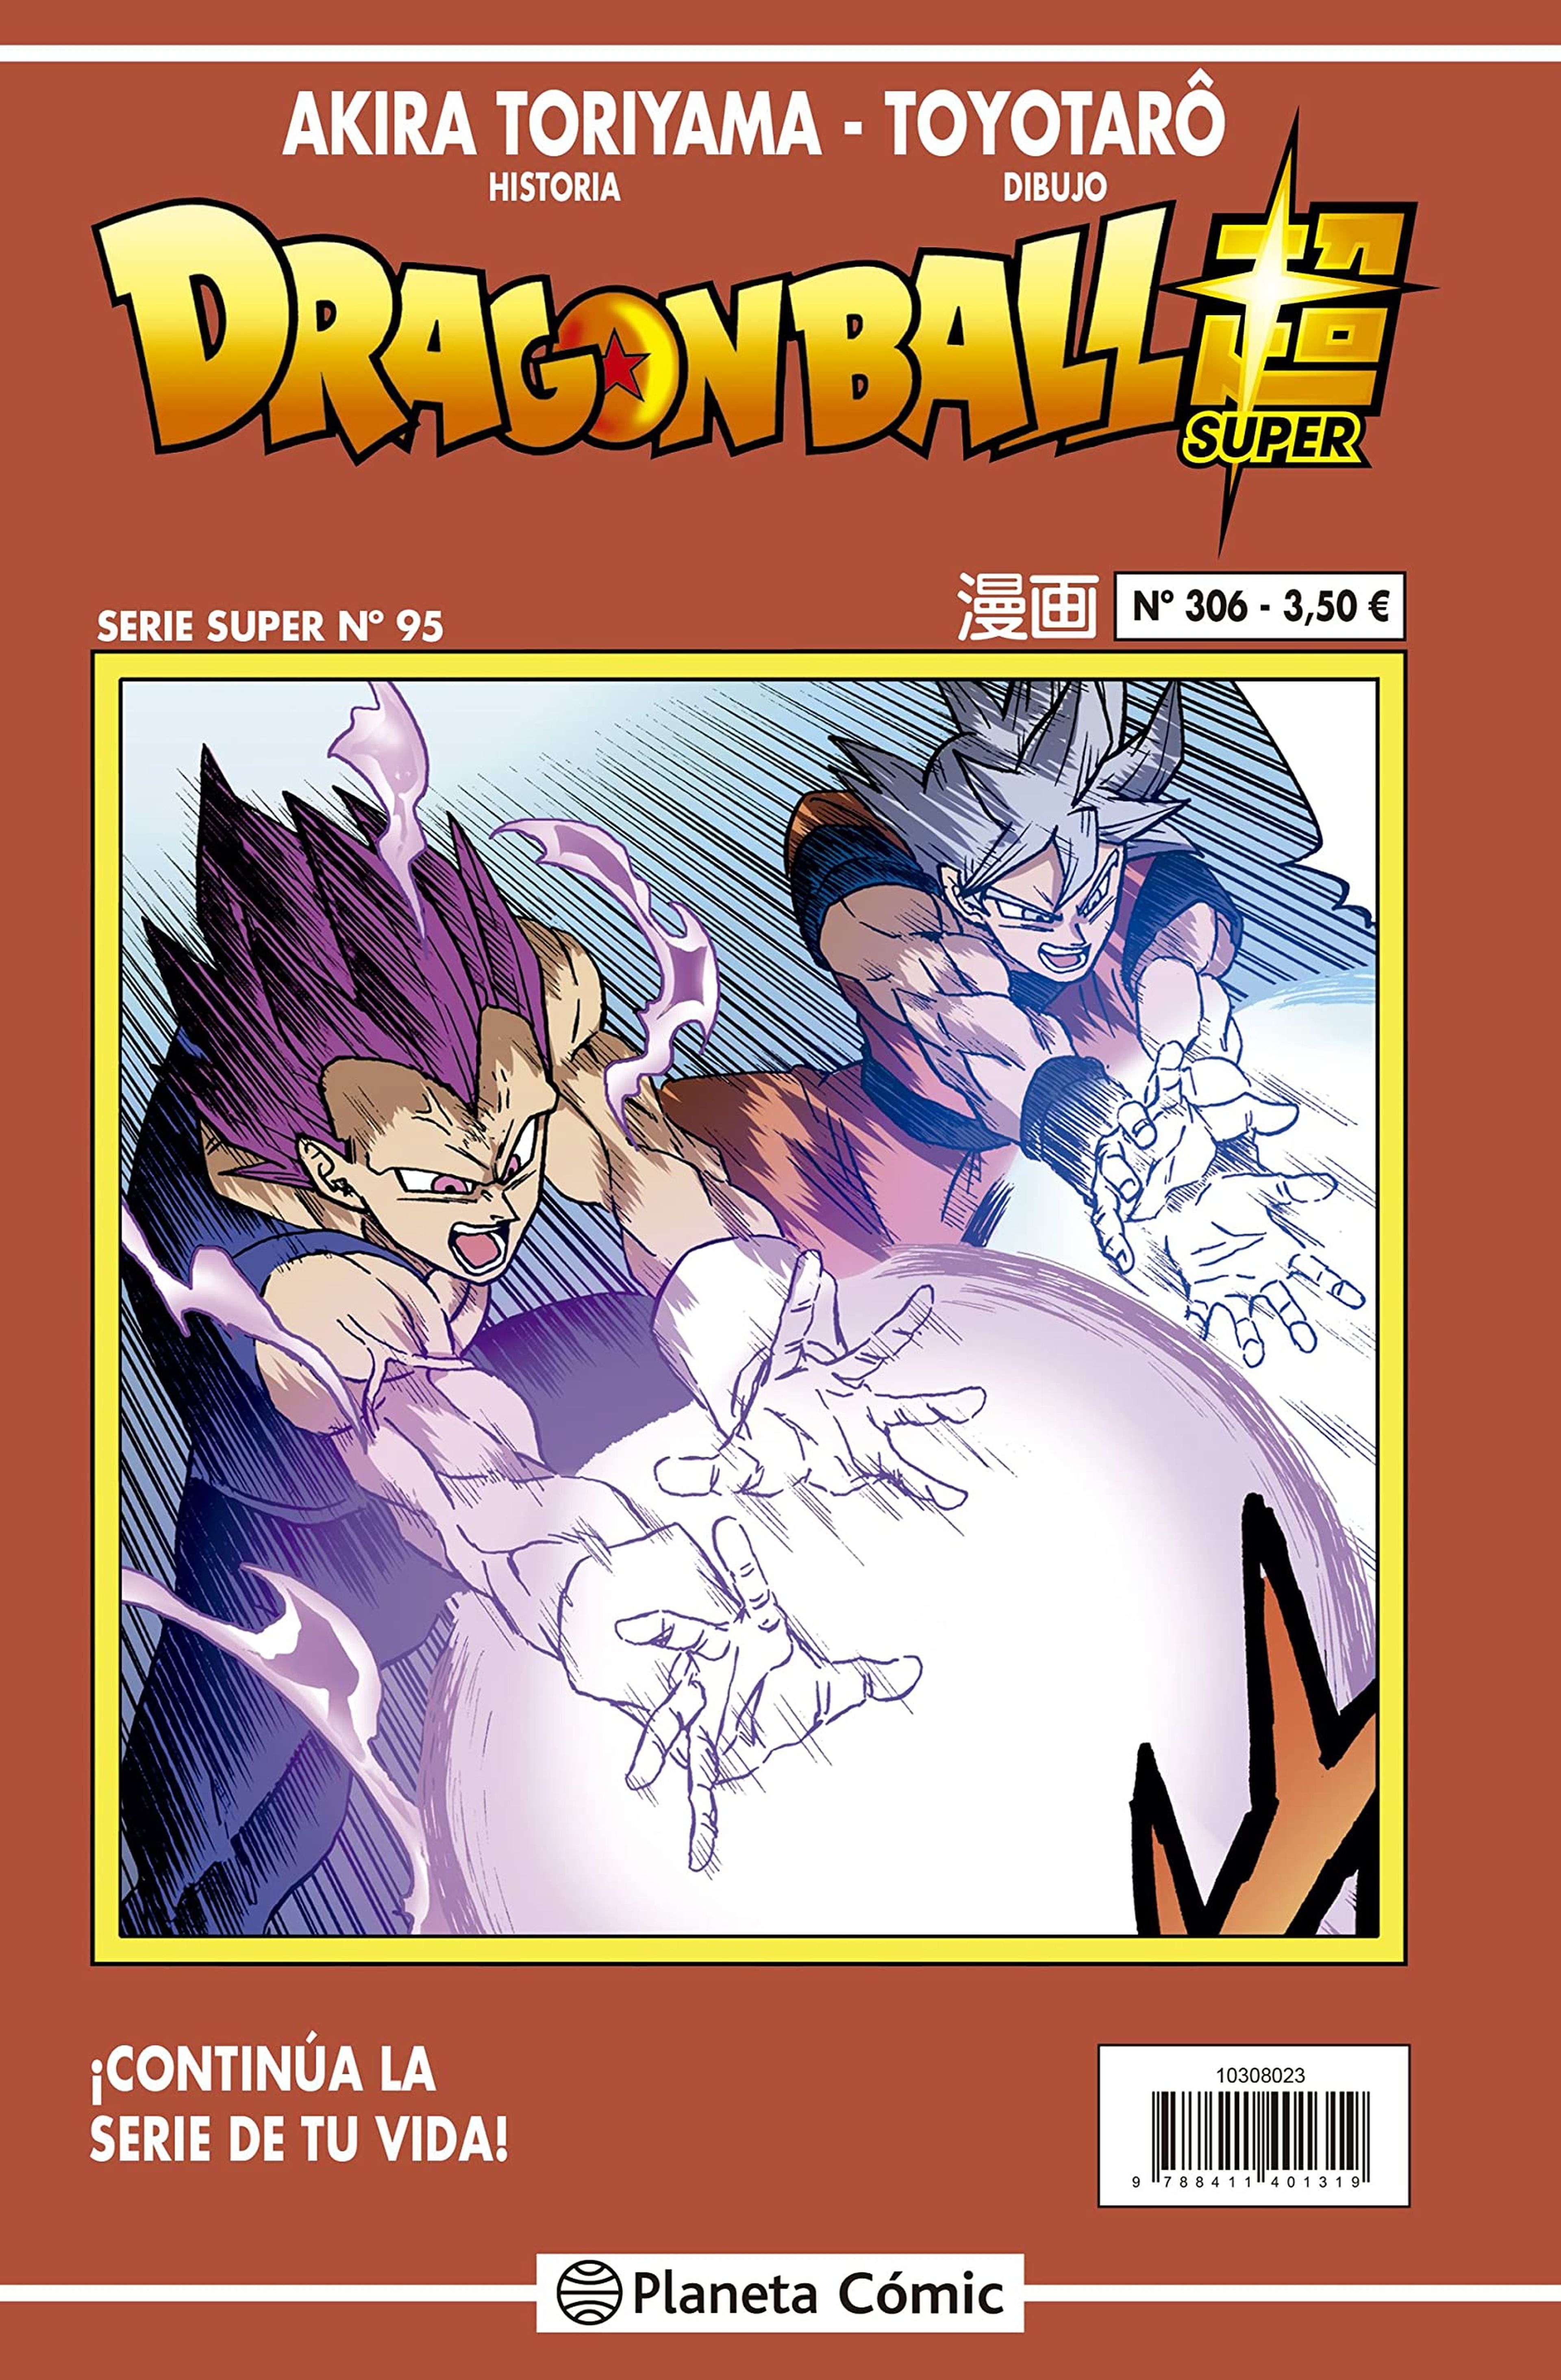 Dragon Ball Super - Portada y fecha de lanzamiento del número 95 de la Serie Roja. ¡Goku y Vegeta más fuertes que nunca!